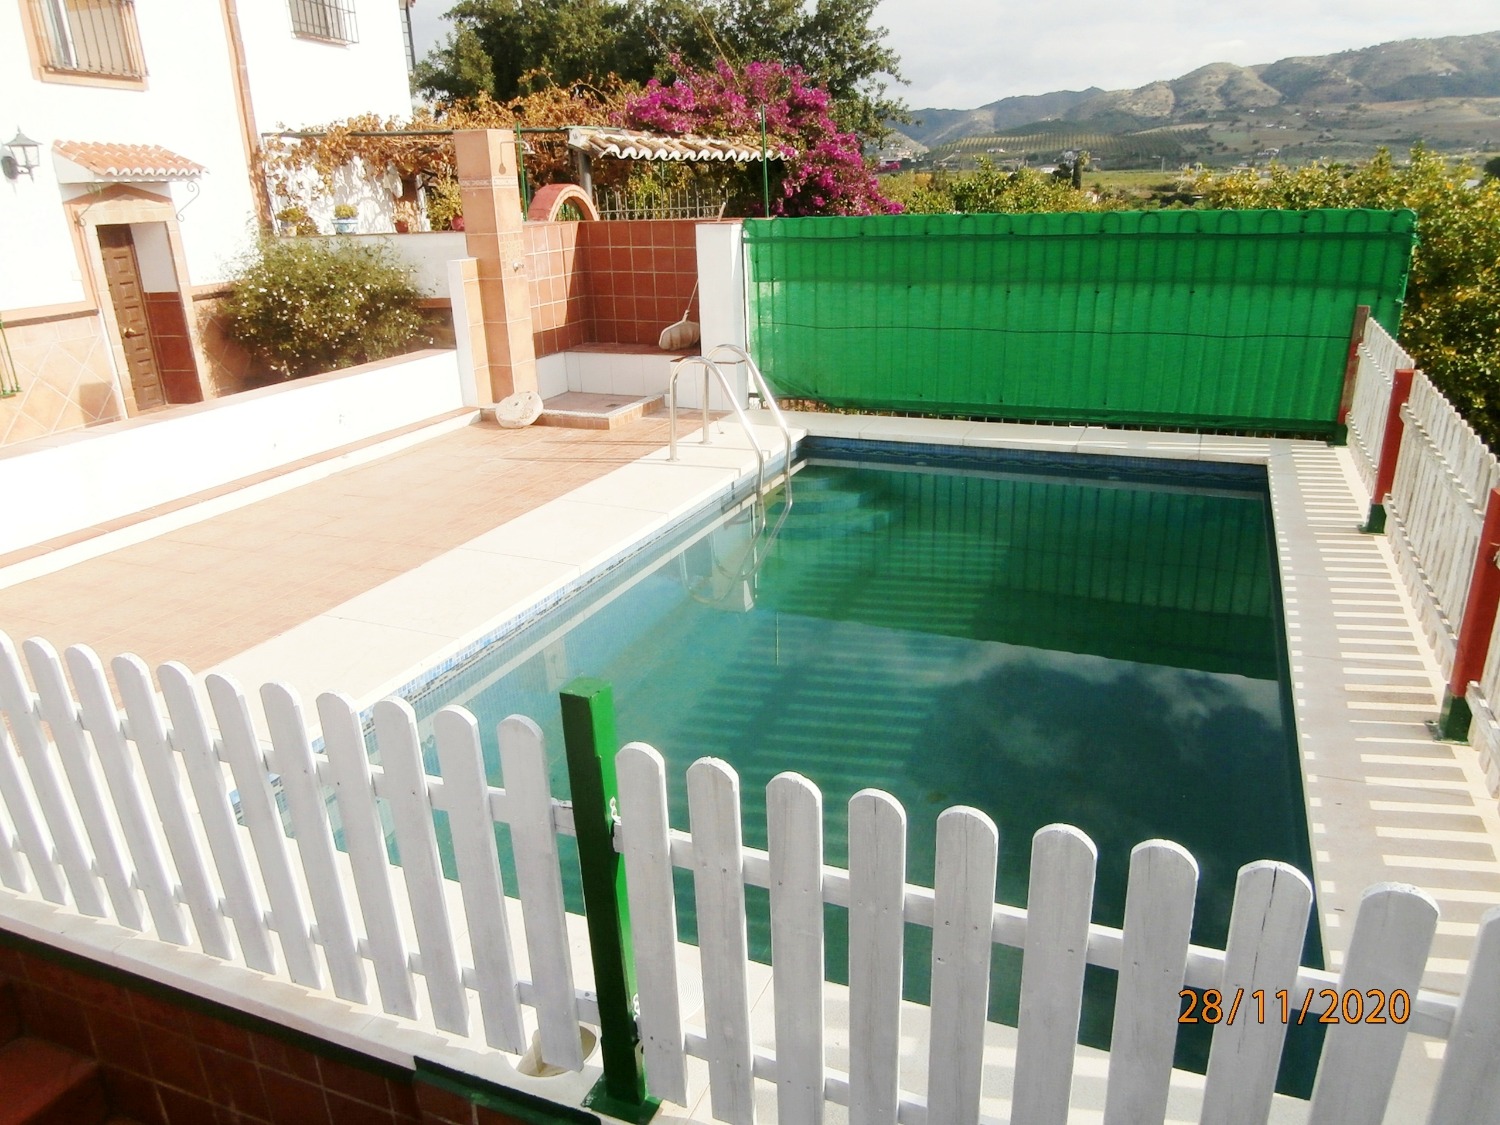 Grande maison de campagne jumelée de style andalou avec piscine, terrain arable, entièrement clôturé de 3 220 m2 environ, bon accès.